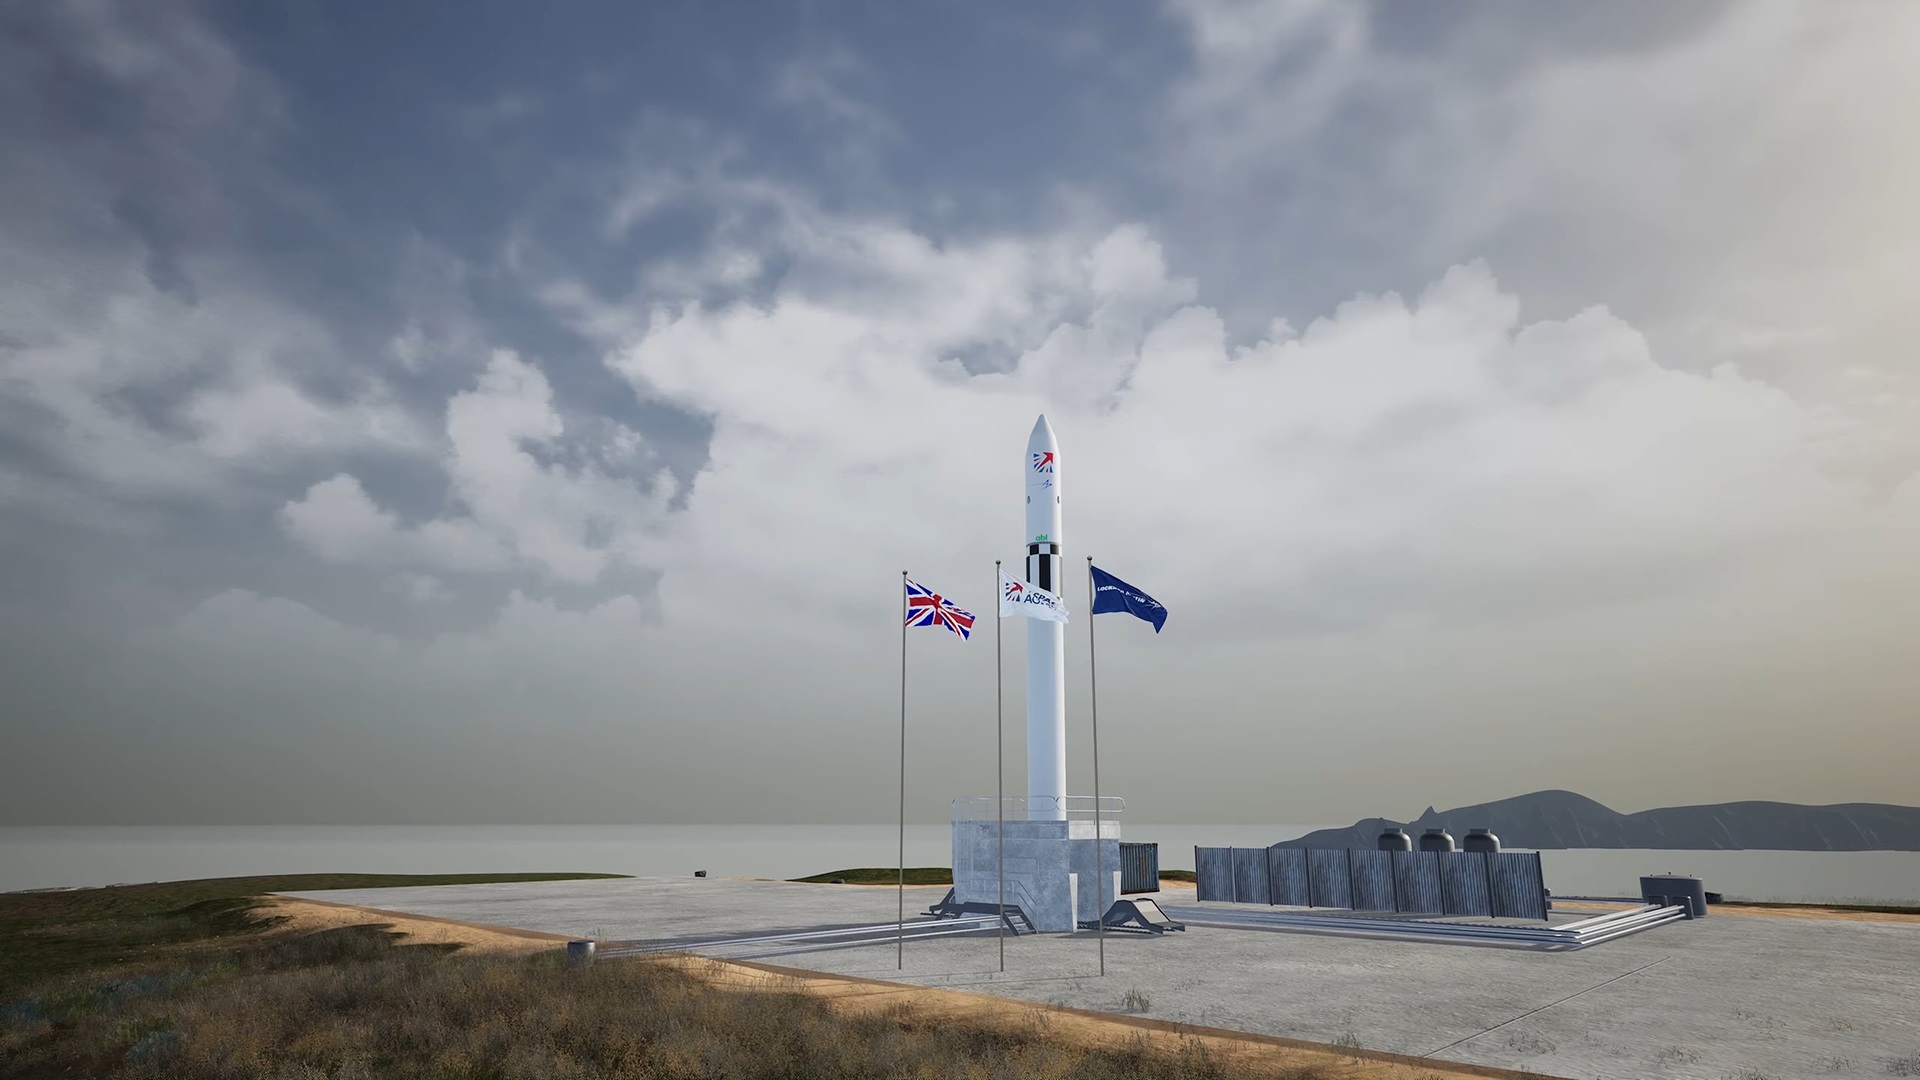 ABL e Lockheed Martin inaugureranno i voli orbitali dal Regno Unito